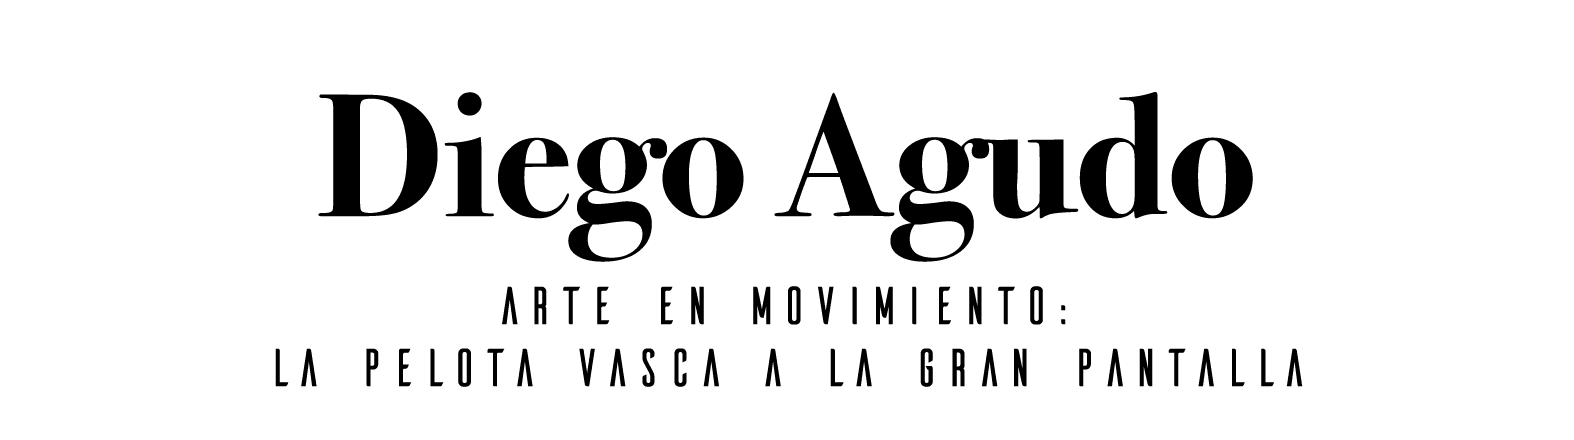 Diego Agudo  Arte en movimiento: La pelota vasca a la gran pantalla